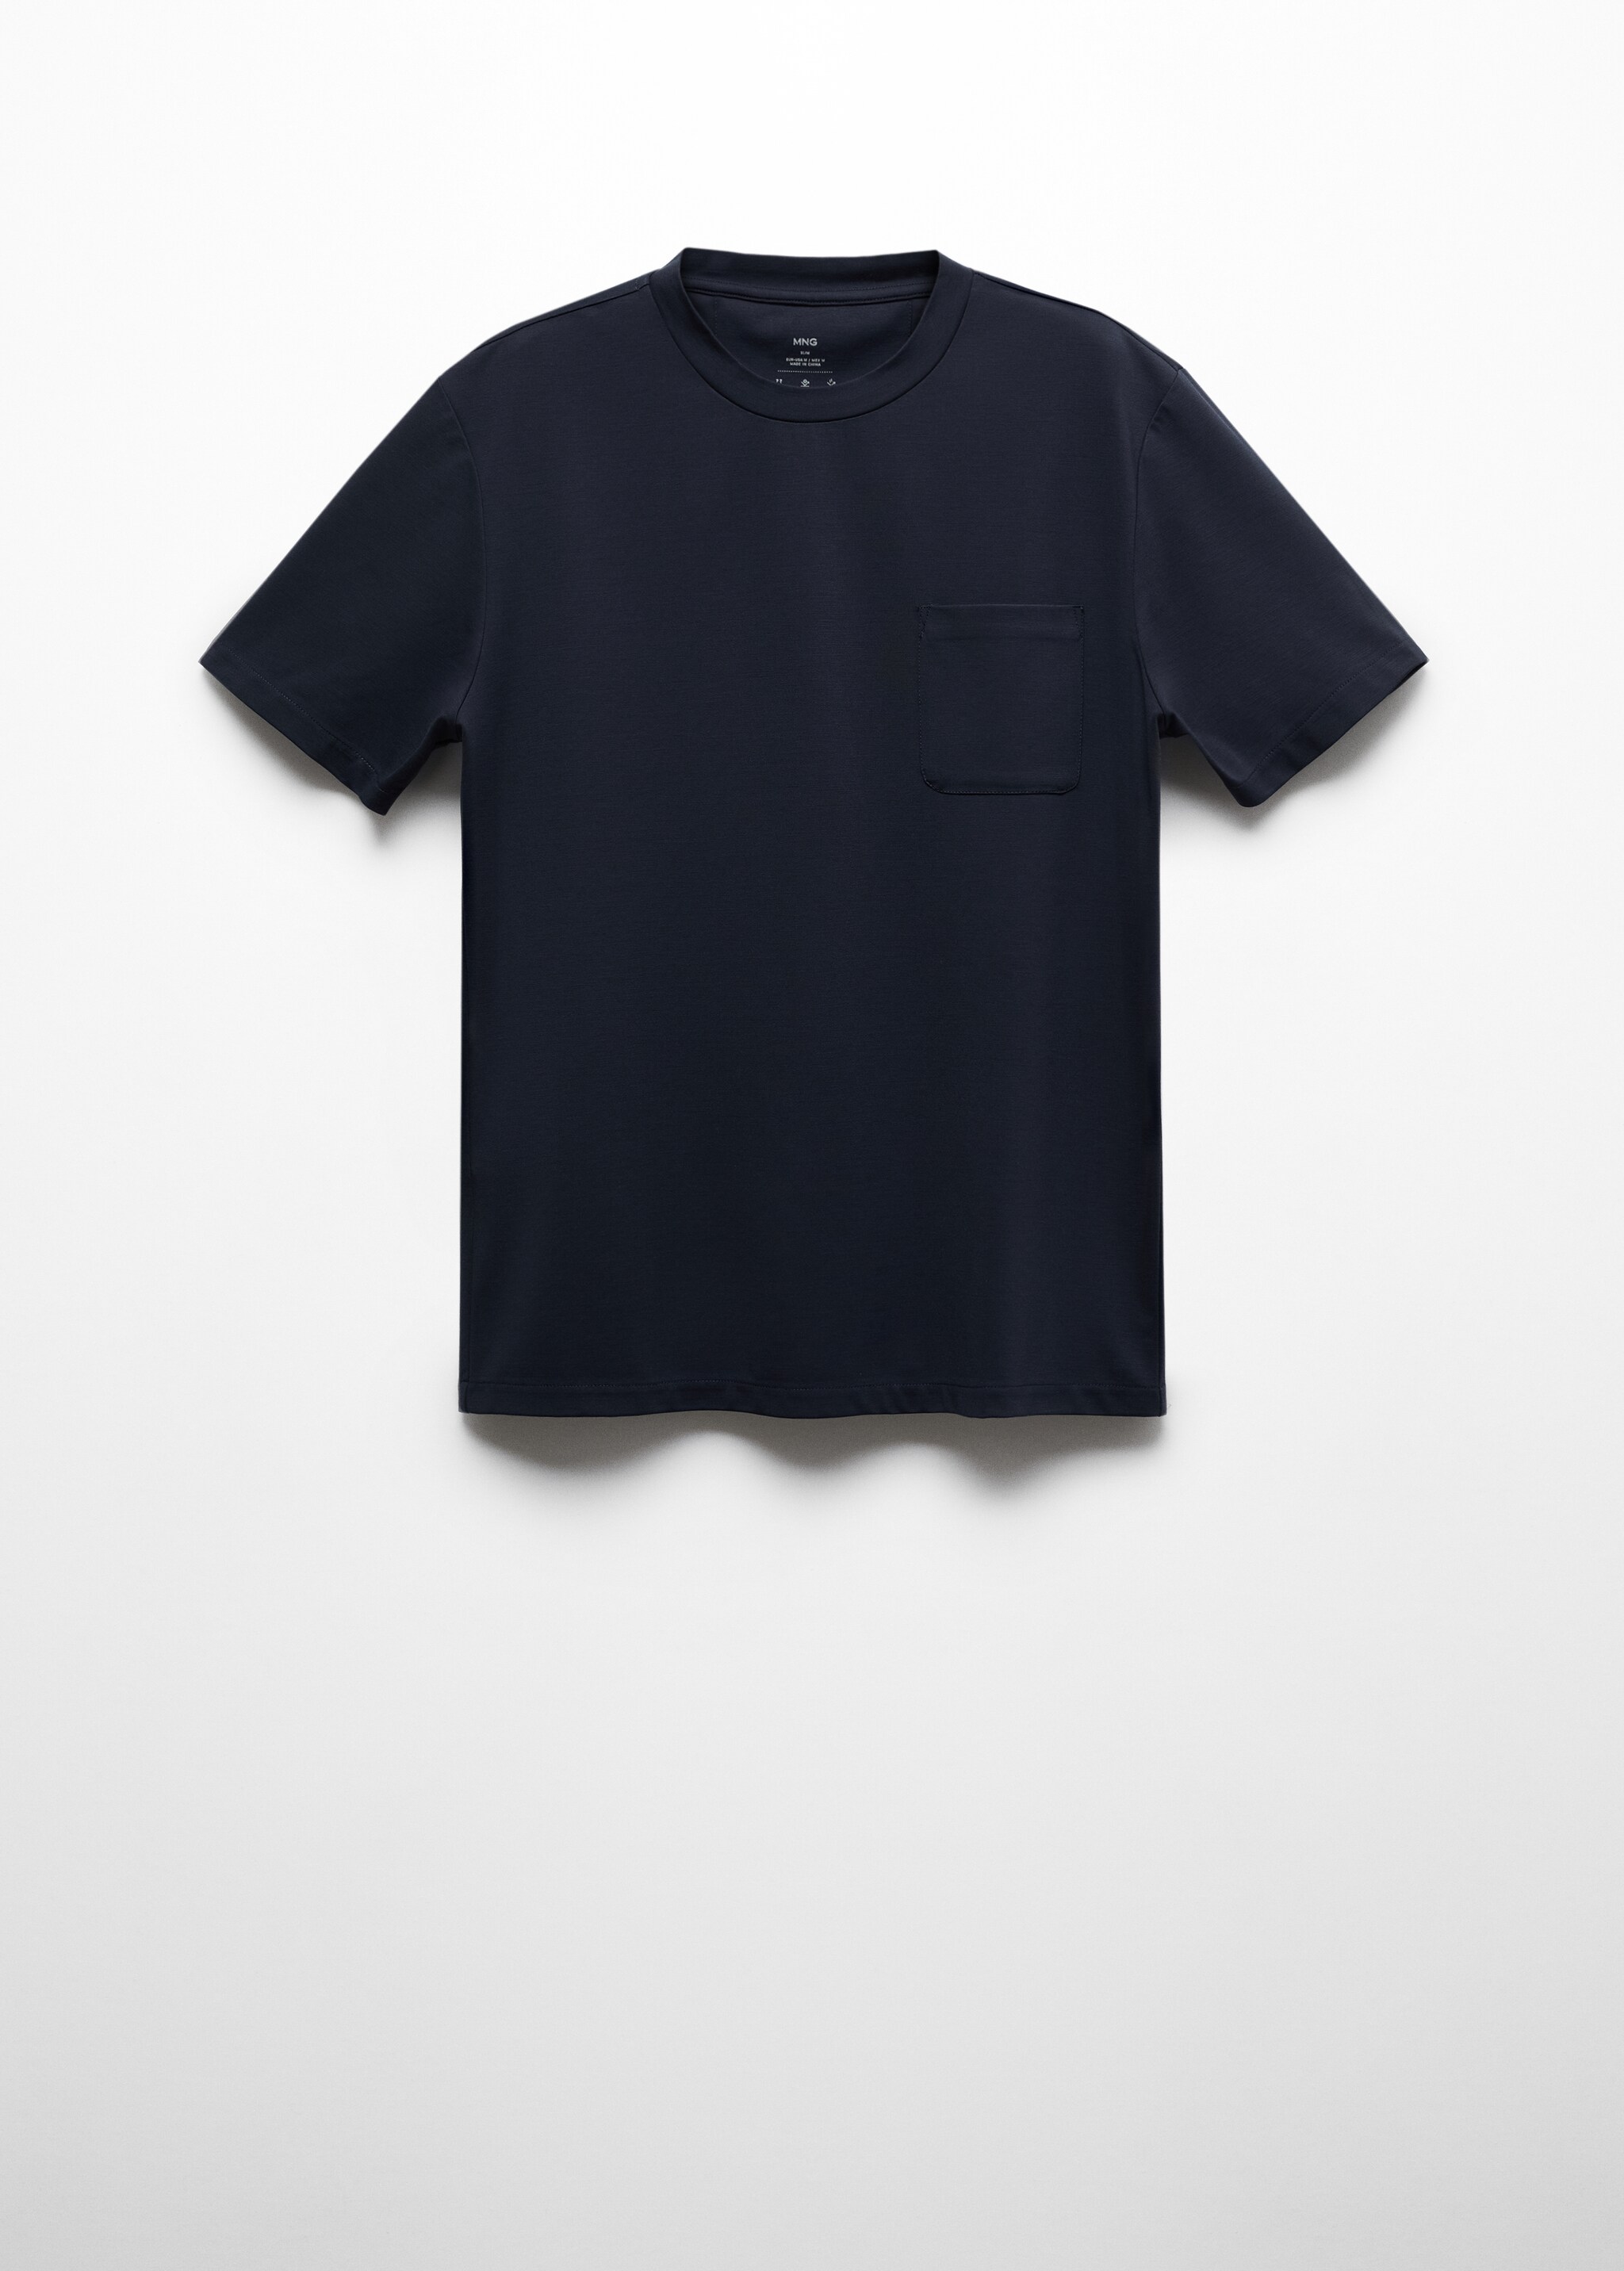 T-shirt slim fit com bolso - Artigo sem modelo